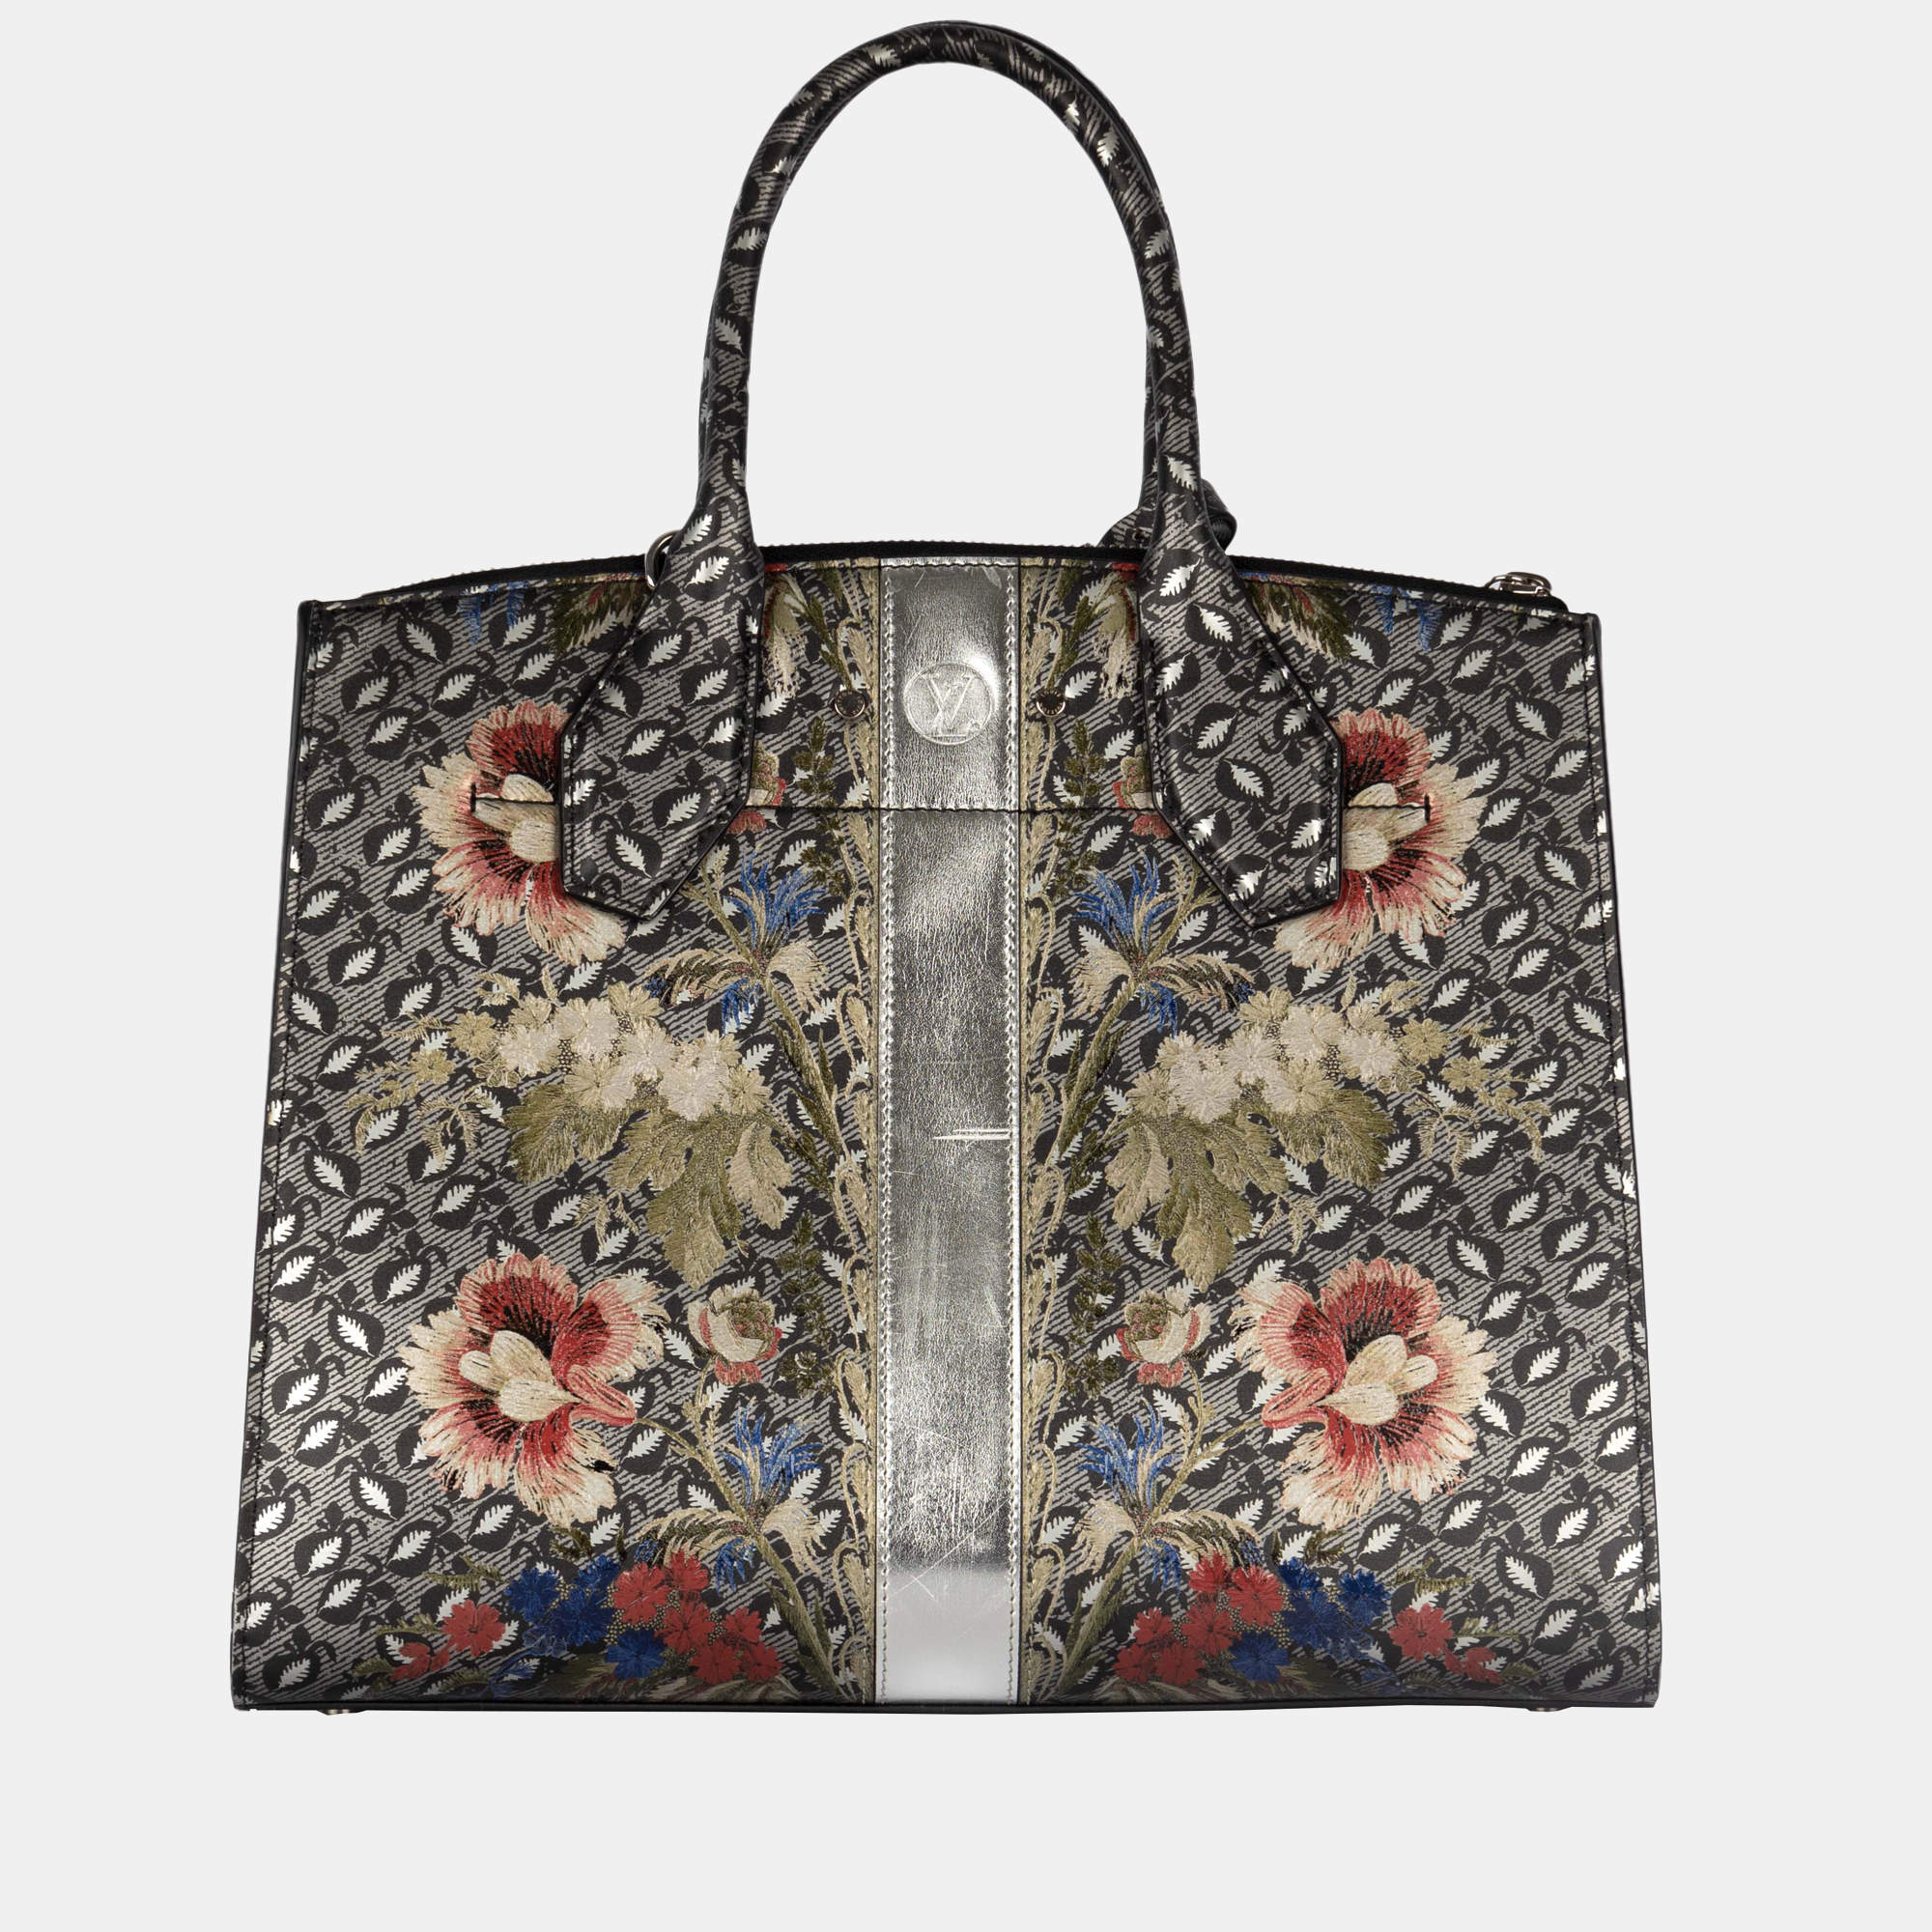 Louis Vuitton Floral Handbag